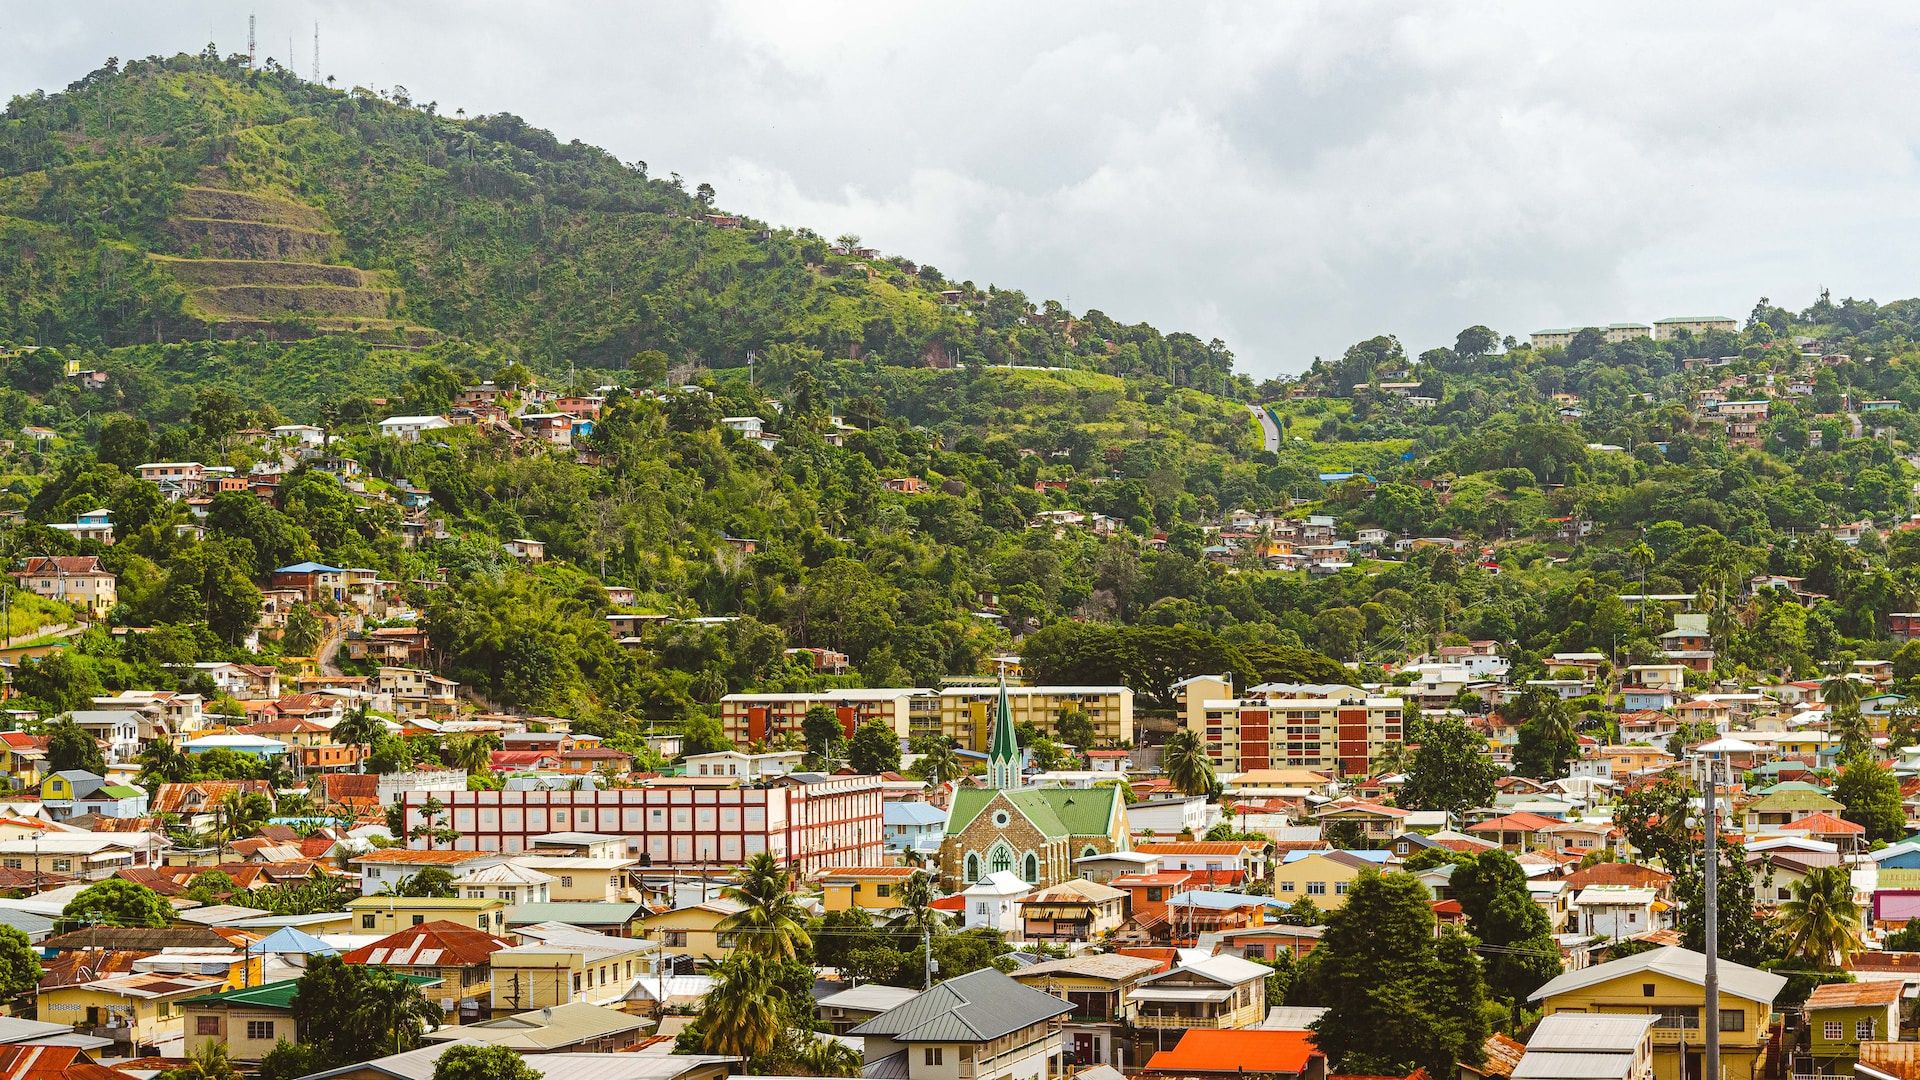 Aerial view of Port of Spain, Trinidad & Tobago 